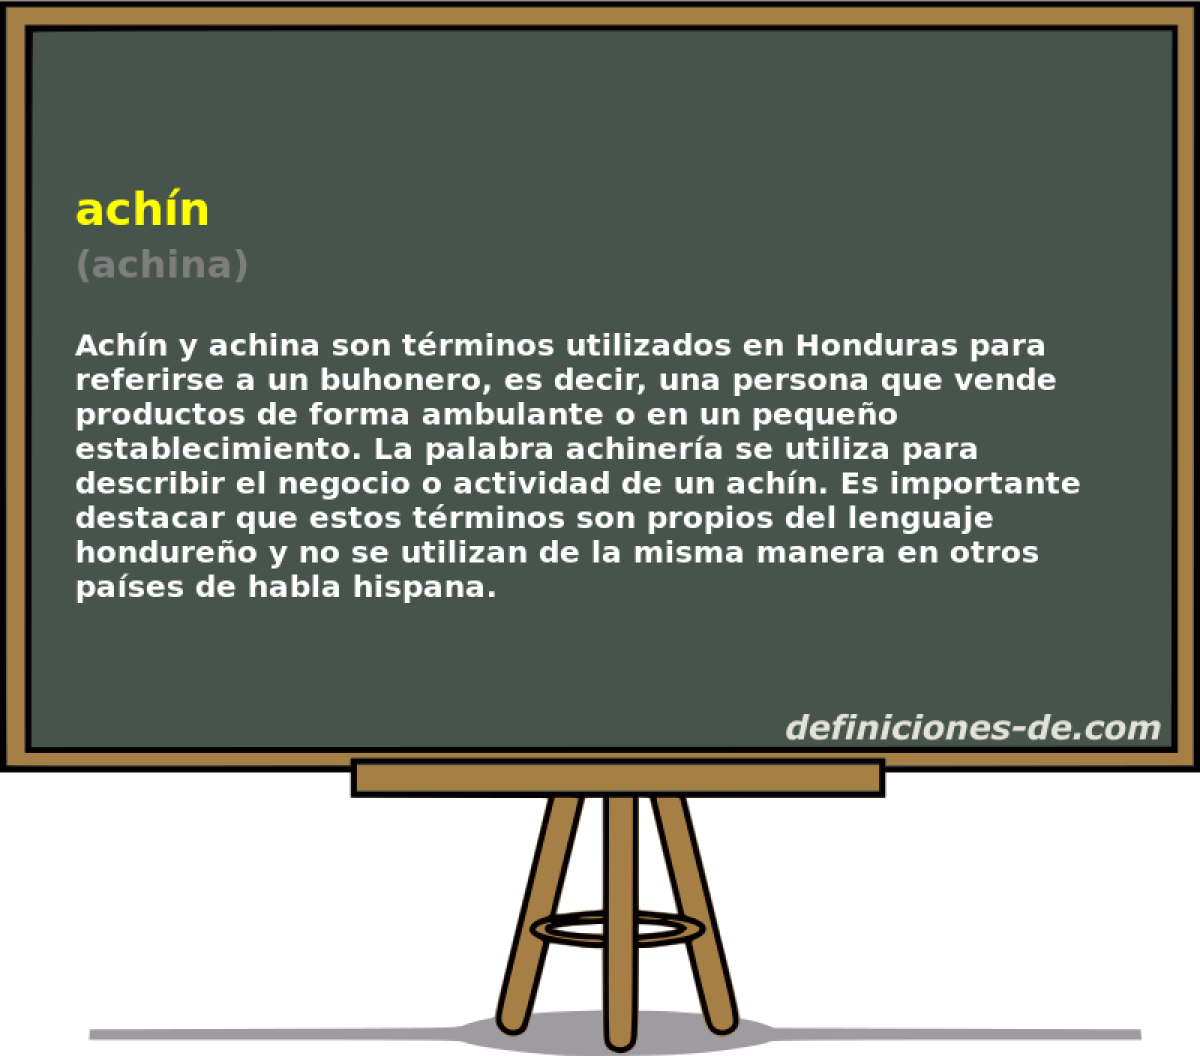 achn (achina)